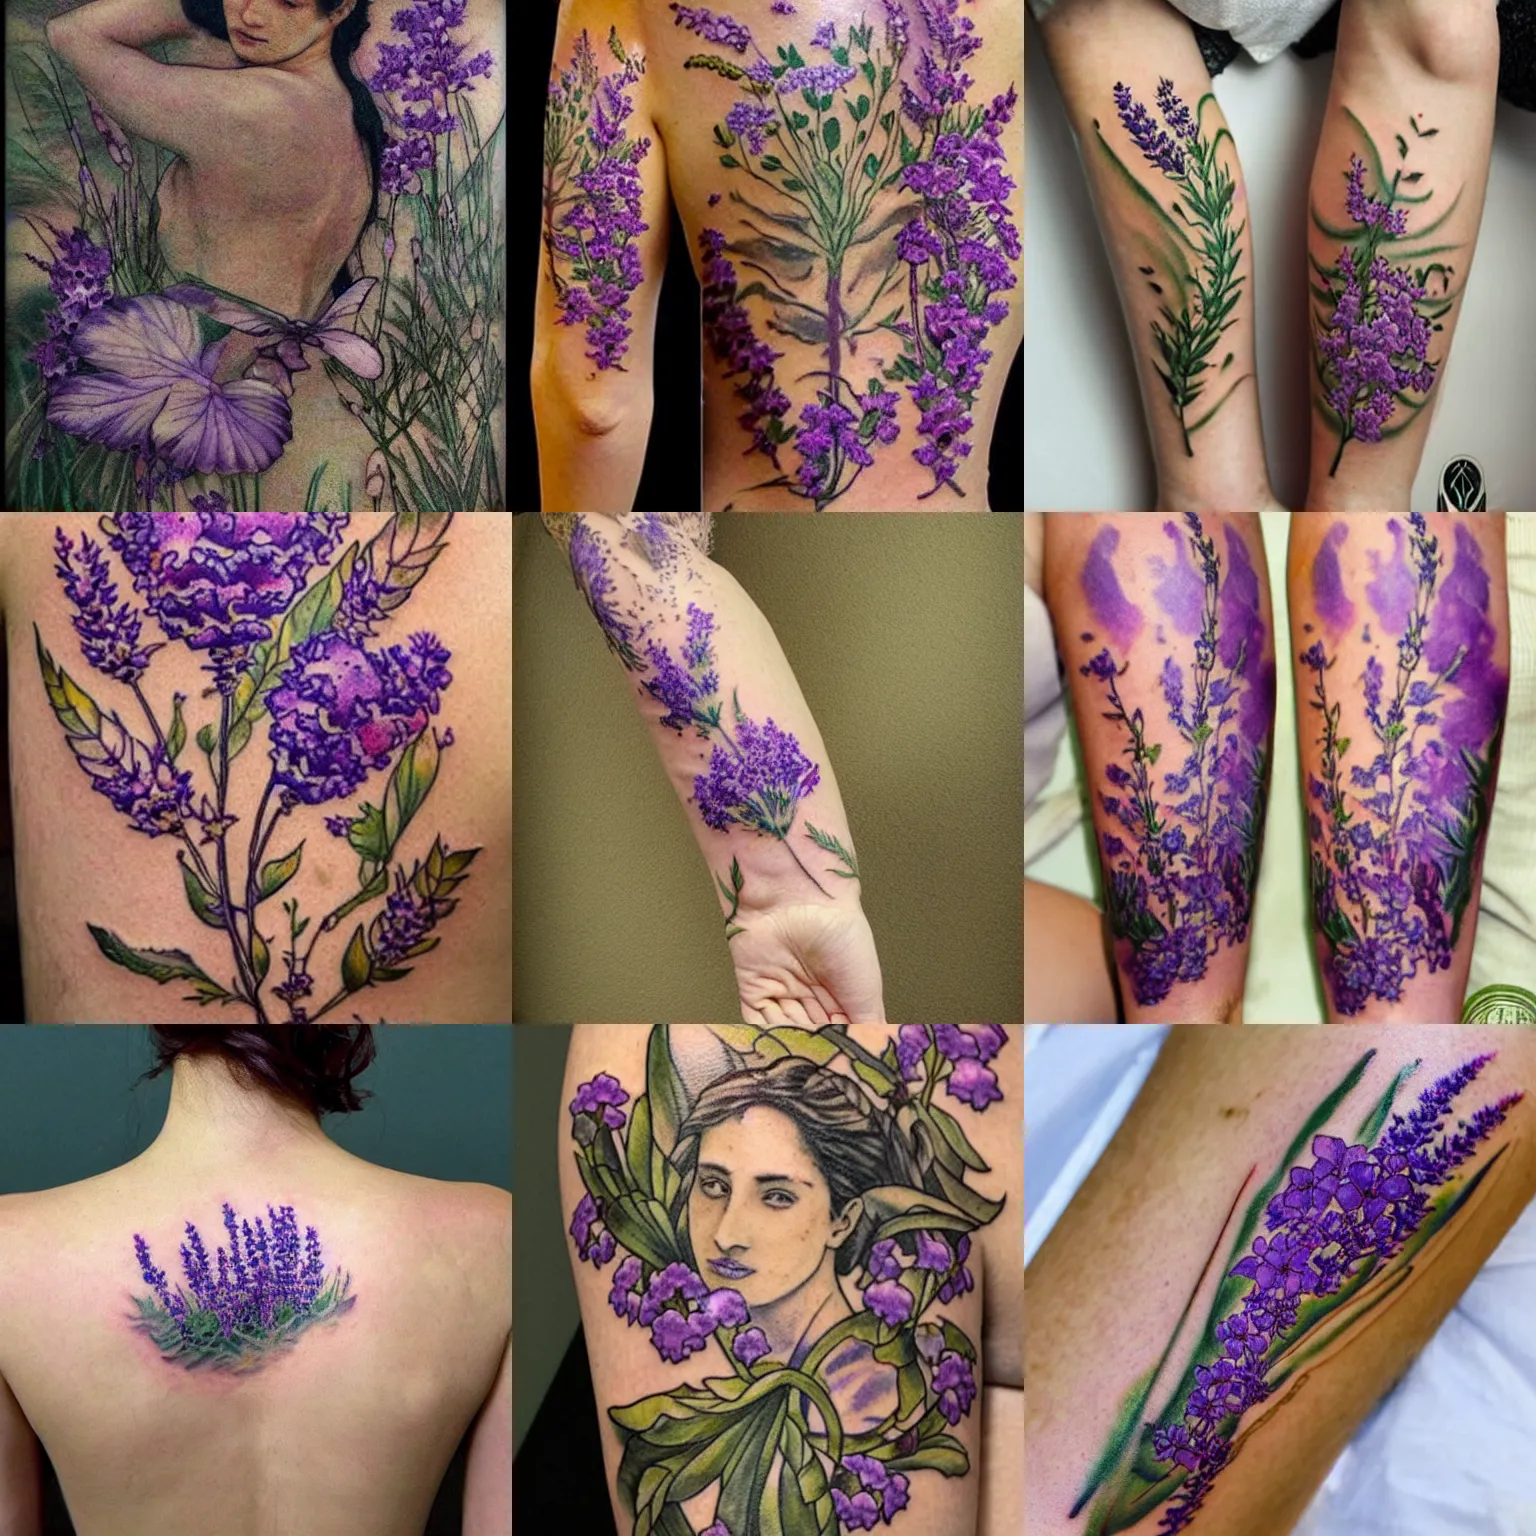 New tattoo - minimalist lilac flower 🖤 : r/tattoo